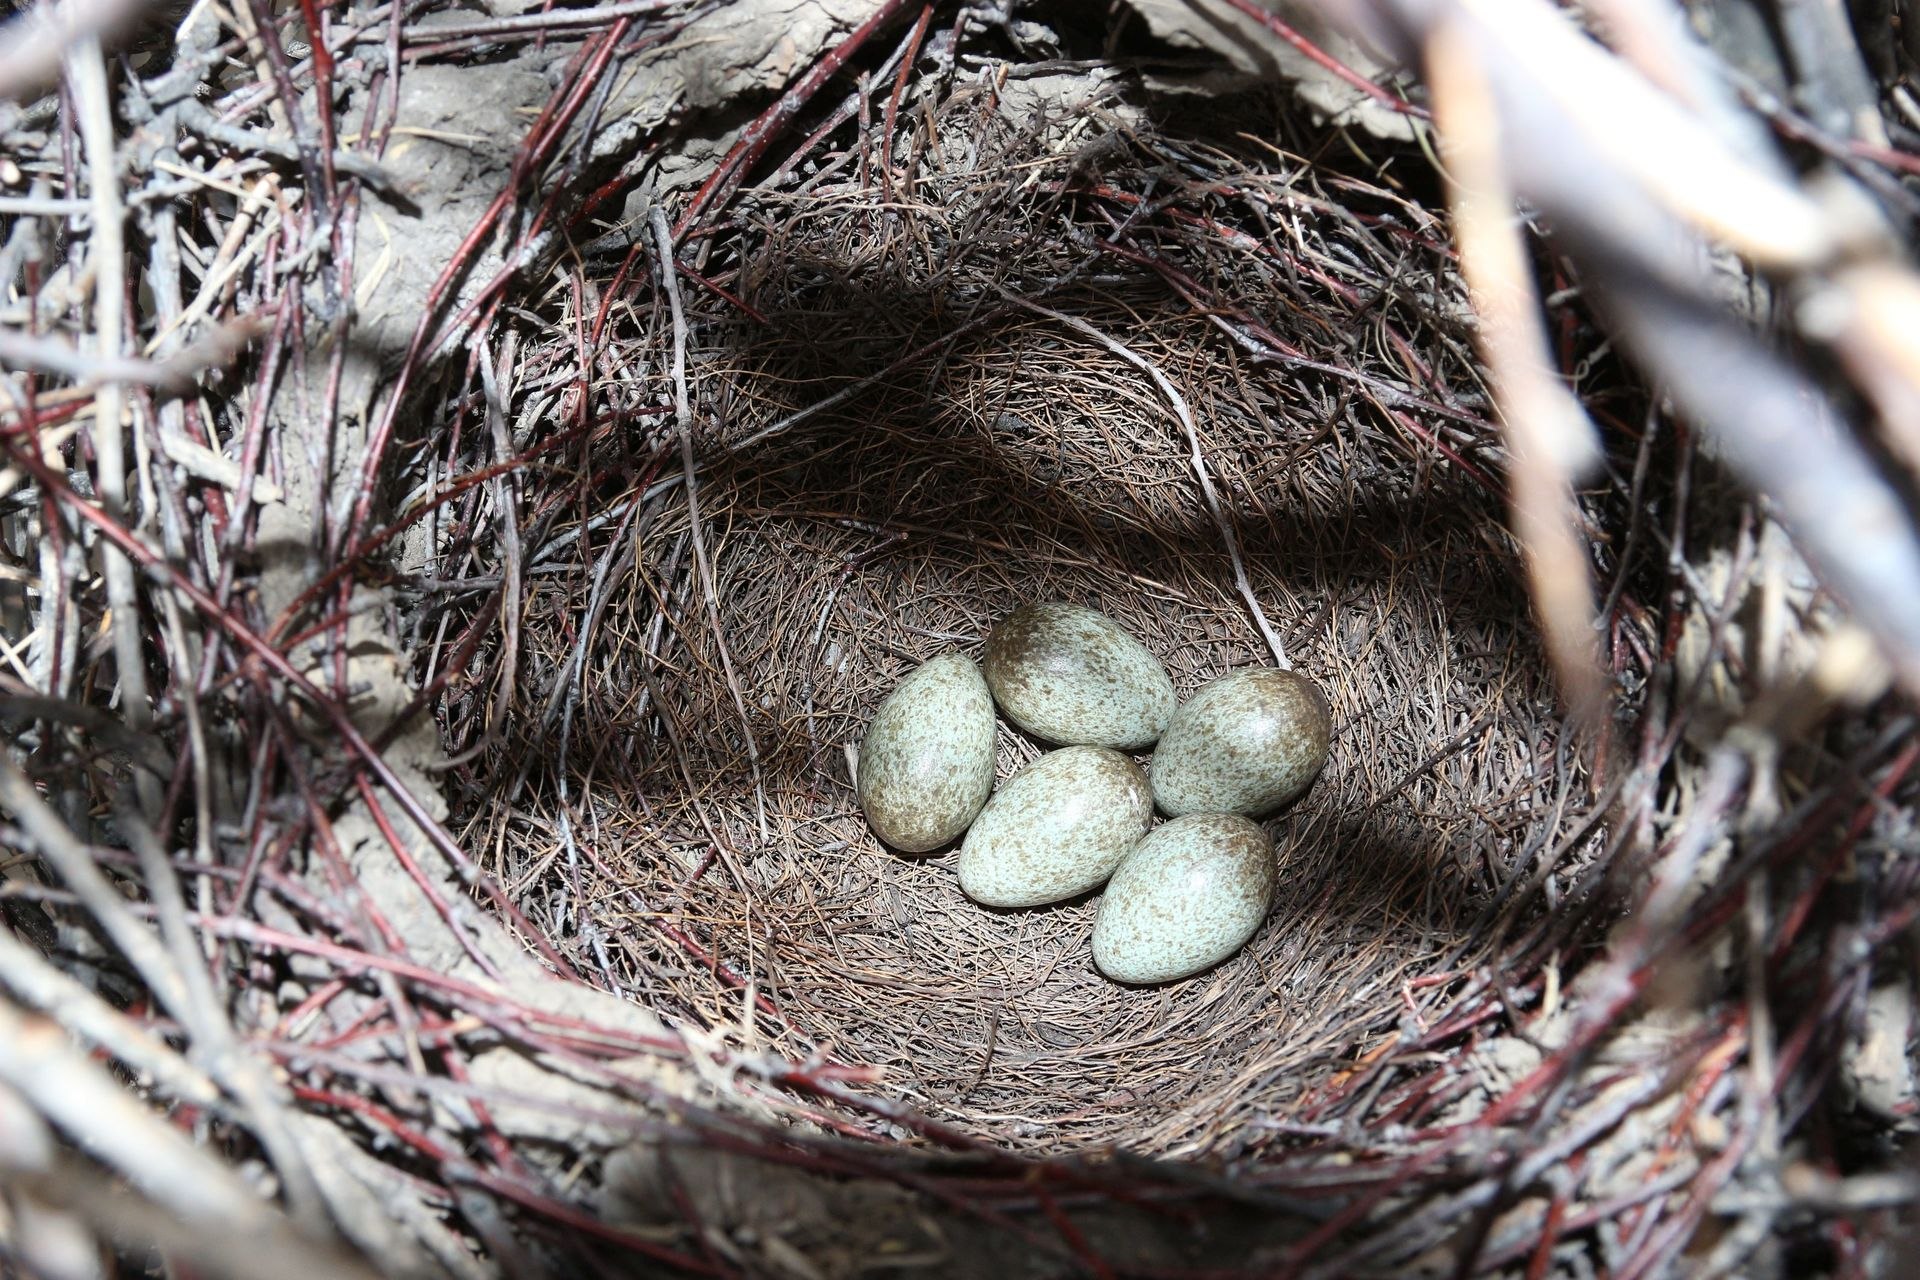 Яйца вороны фото в гнезде